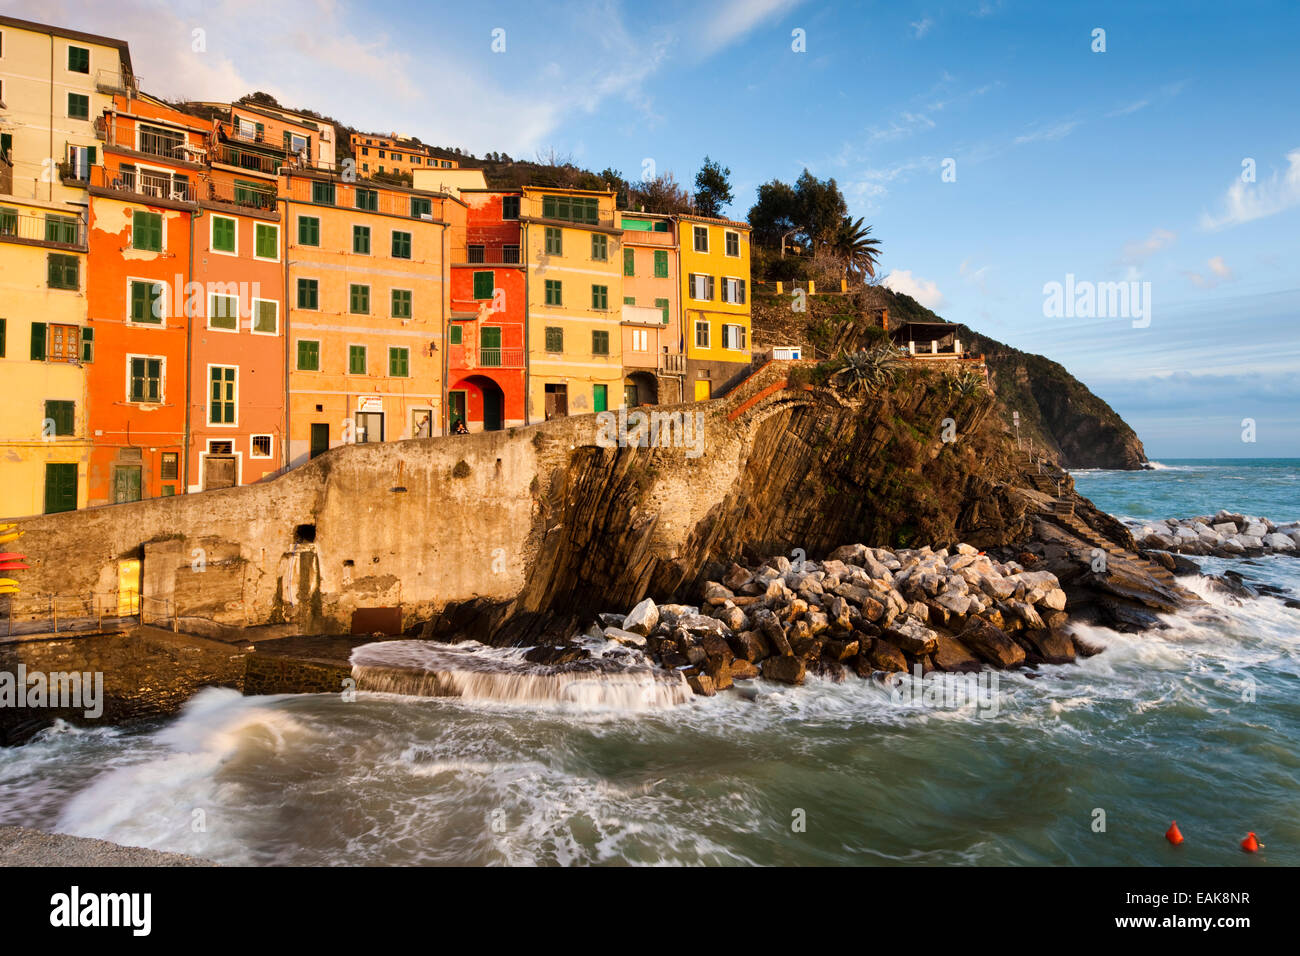 Case colorate sulla costa rocciosa, dichiarato patrimonio culturale mondiale dall'UNESCO, Riomaggiore Cinque Terre Liguria, Italia Foto Stock